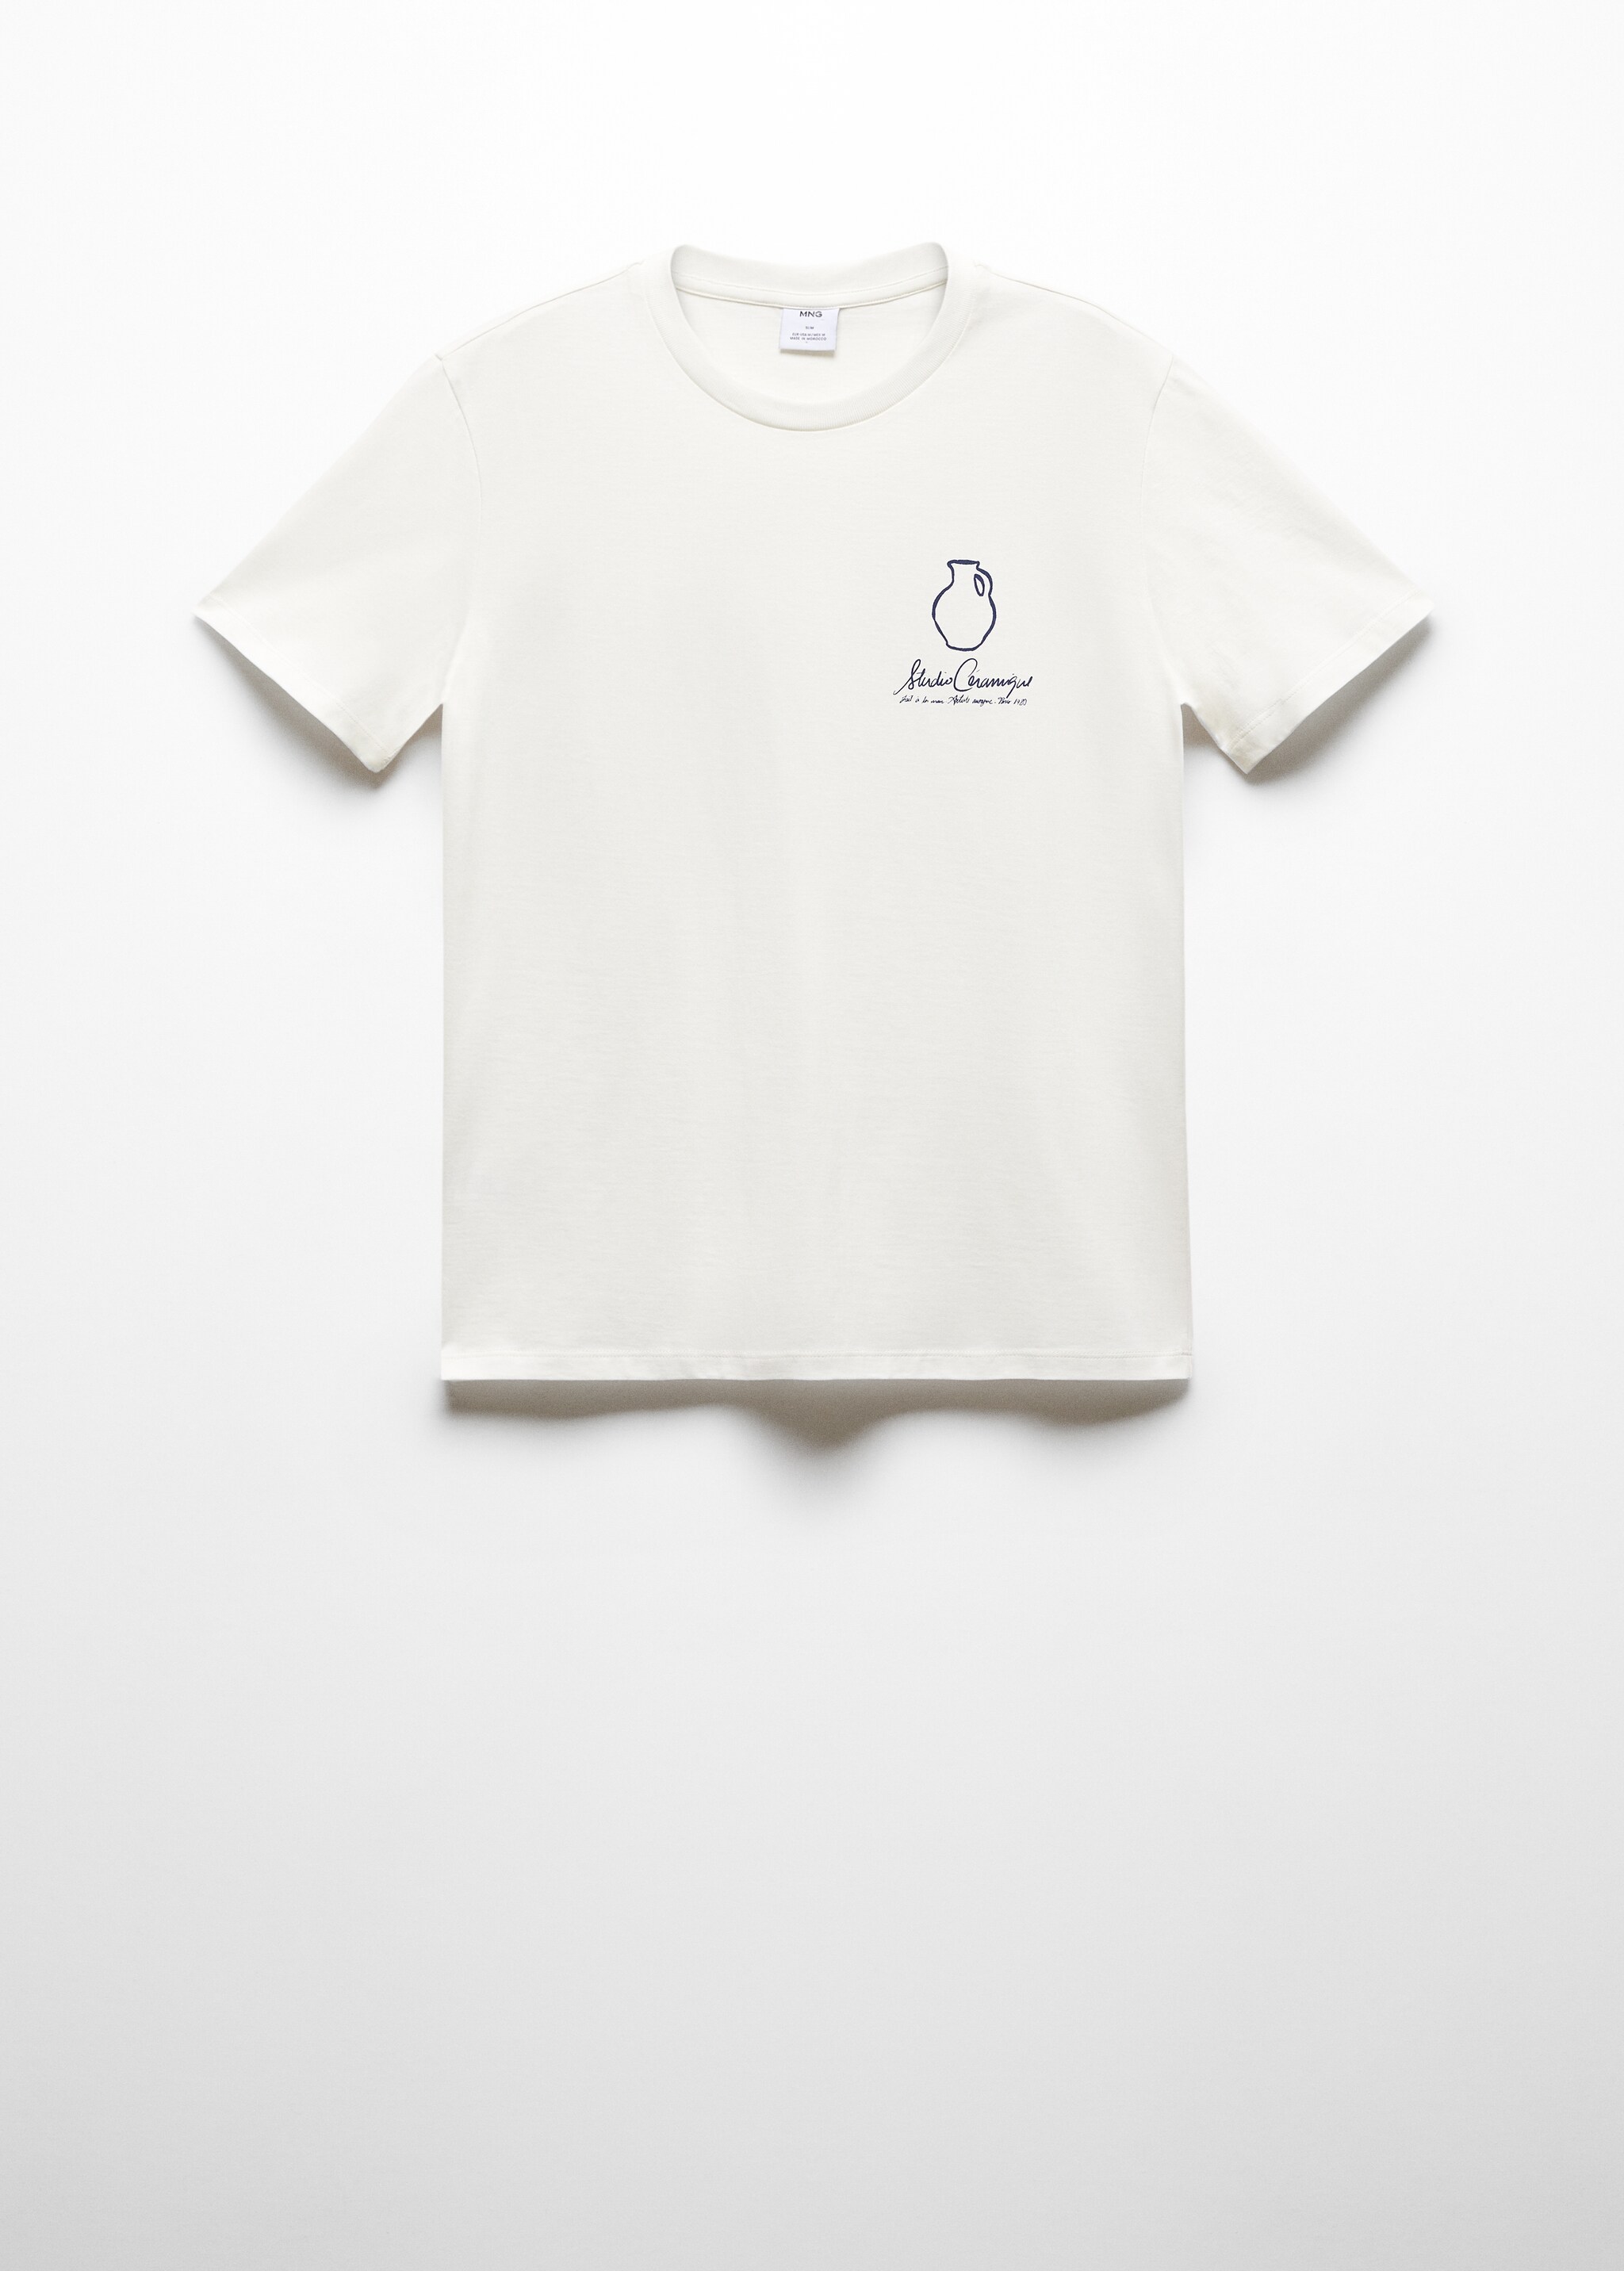 Camiseta 100% algodón detalle estampado - Artículo sin modelo